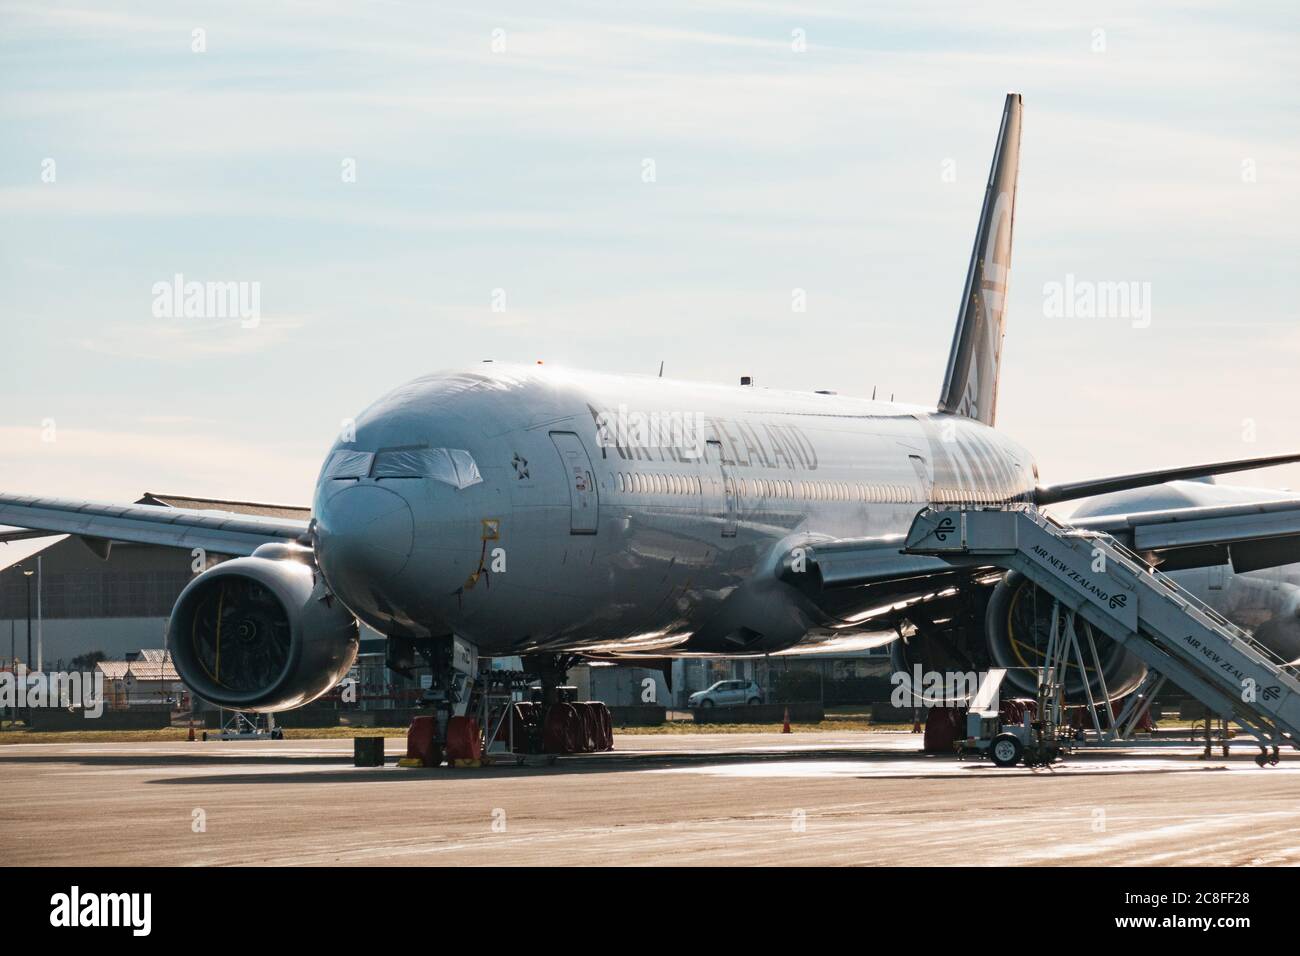 Air New Zealand Boeing 777 parkte im Lager am Flughafen Christchurch während der COVID-19 Pandemie, die Flugreisenachfrage Einbruch sah Stockfoto